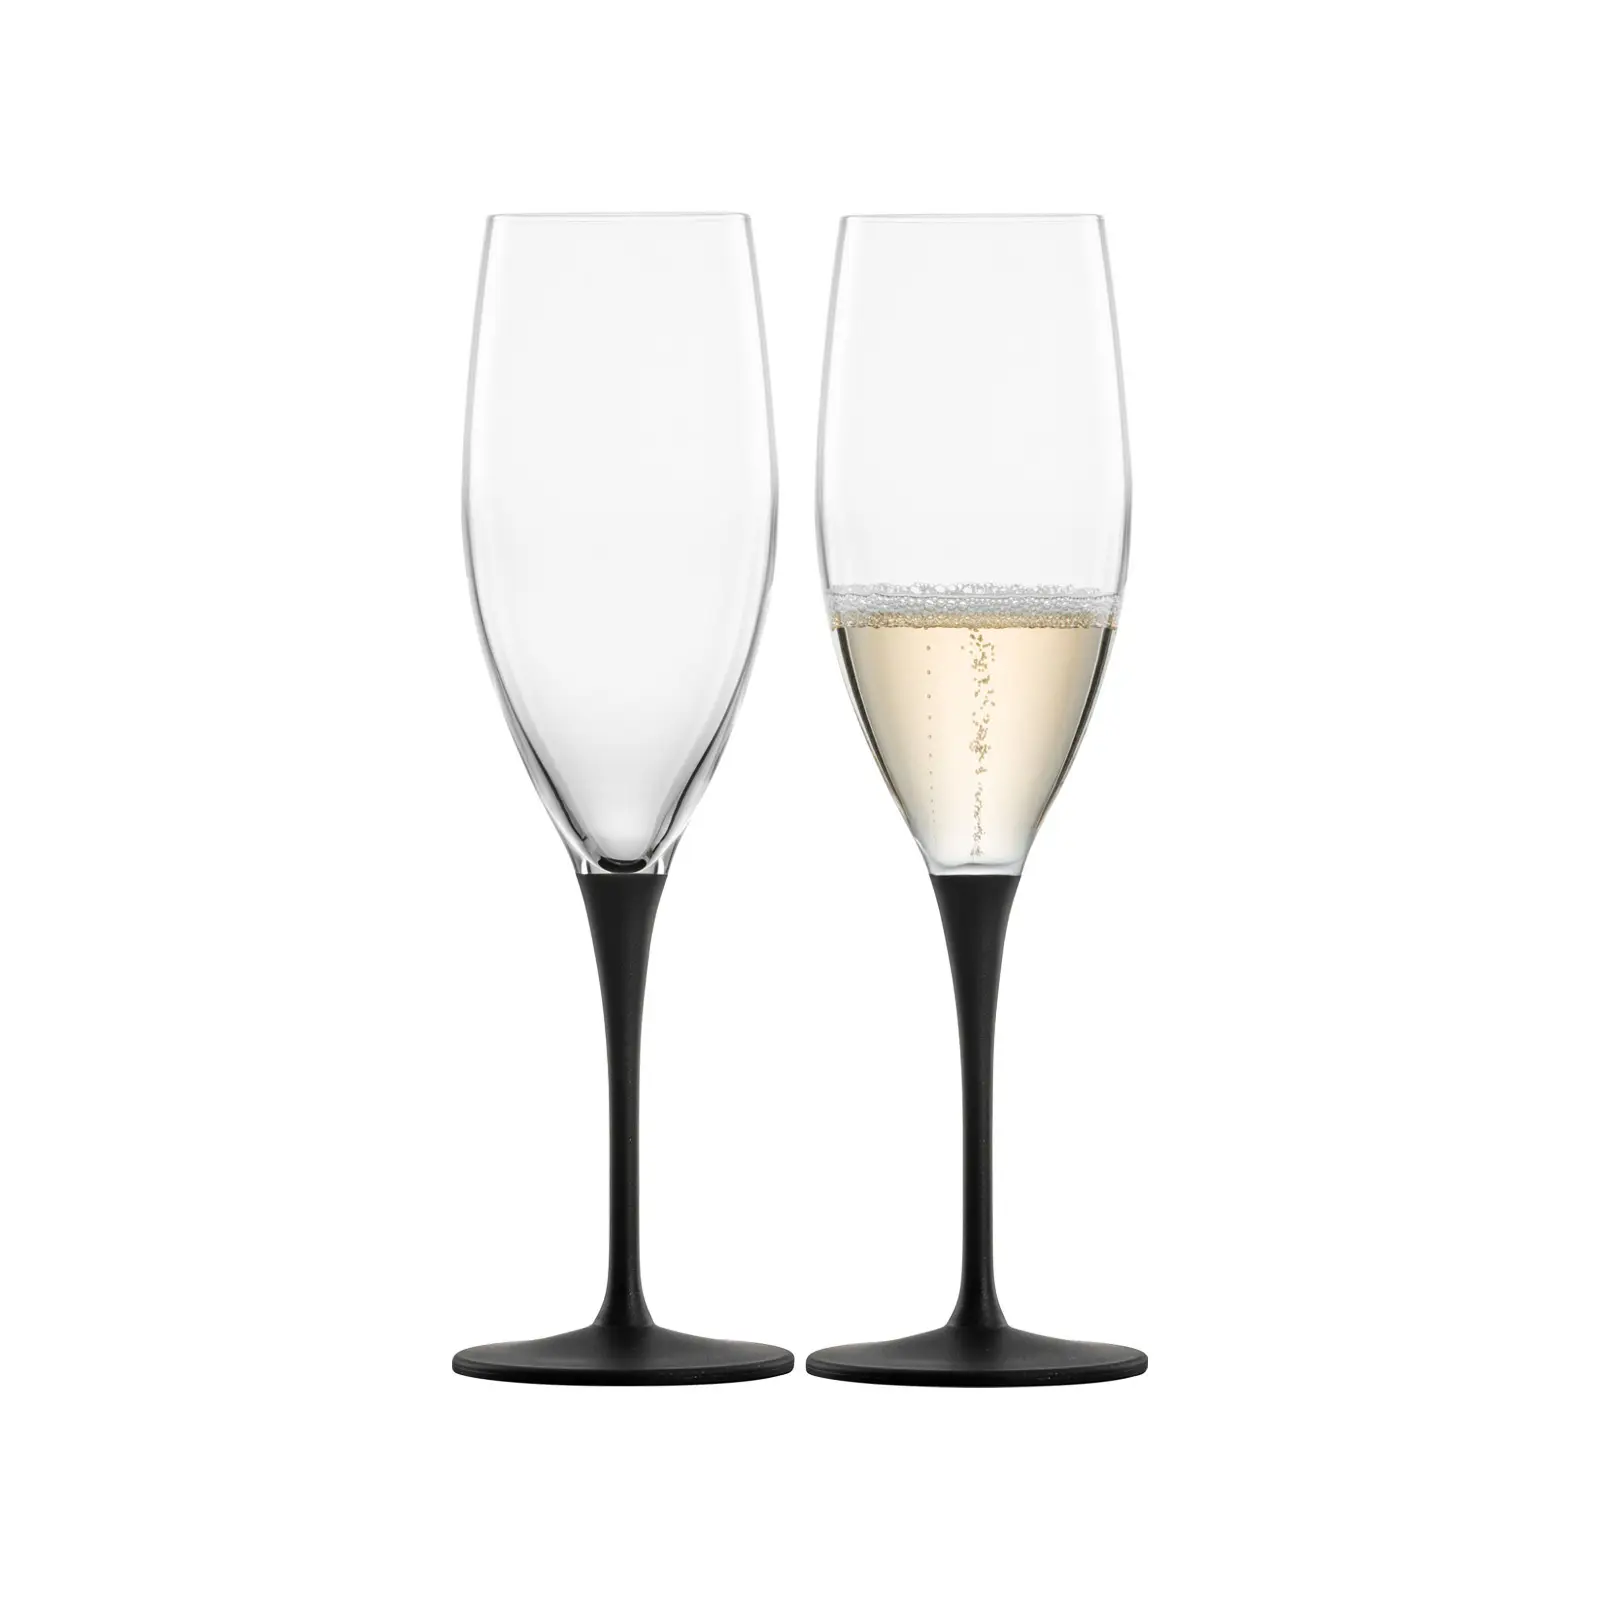 Champagnergl盲ser schiefer Kaya 2er Set | Sektgläser & Champagnergläser